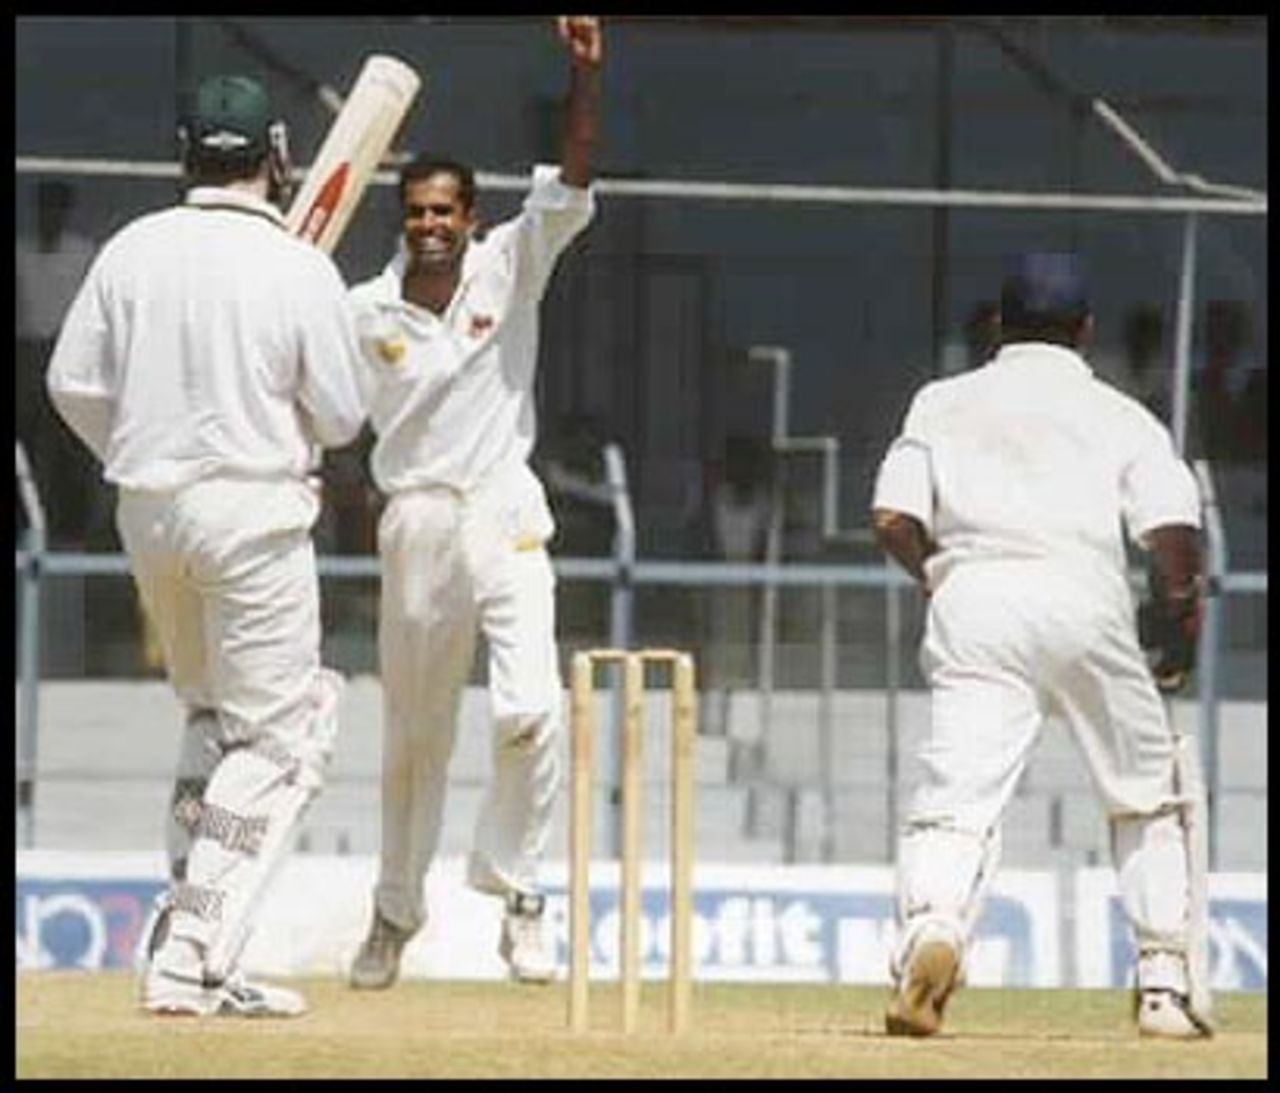 Fleming falls leg before to give Kulkarni his third scalp, Australia in India 2000/01, Mumbai v Australians, Brabourne Stadium, Mumbai, 22-24 Feb 2001 (Day 2)